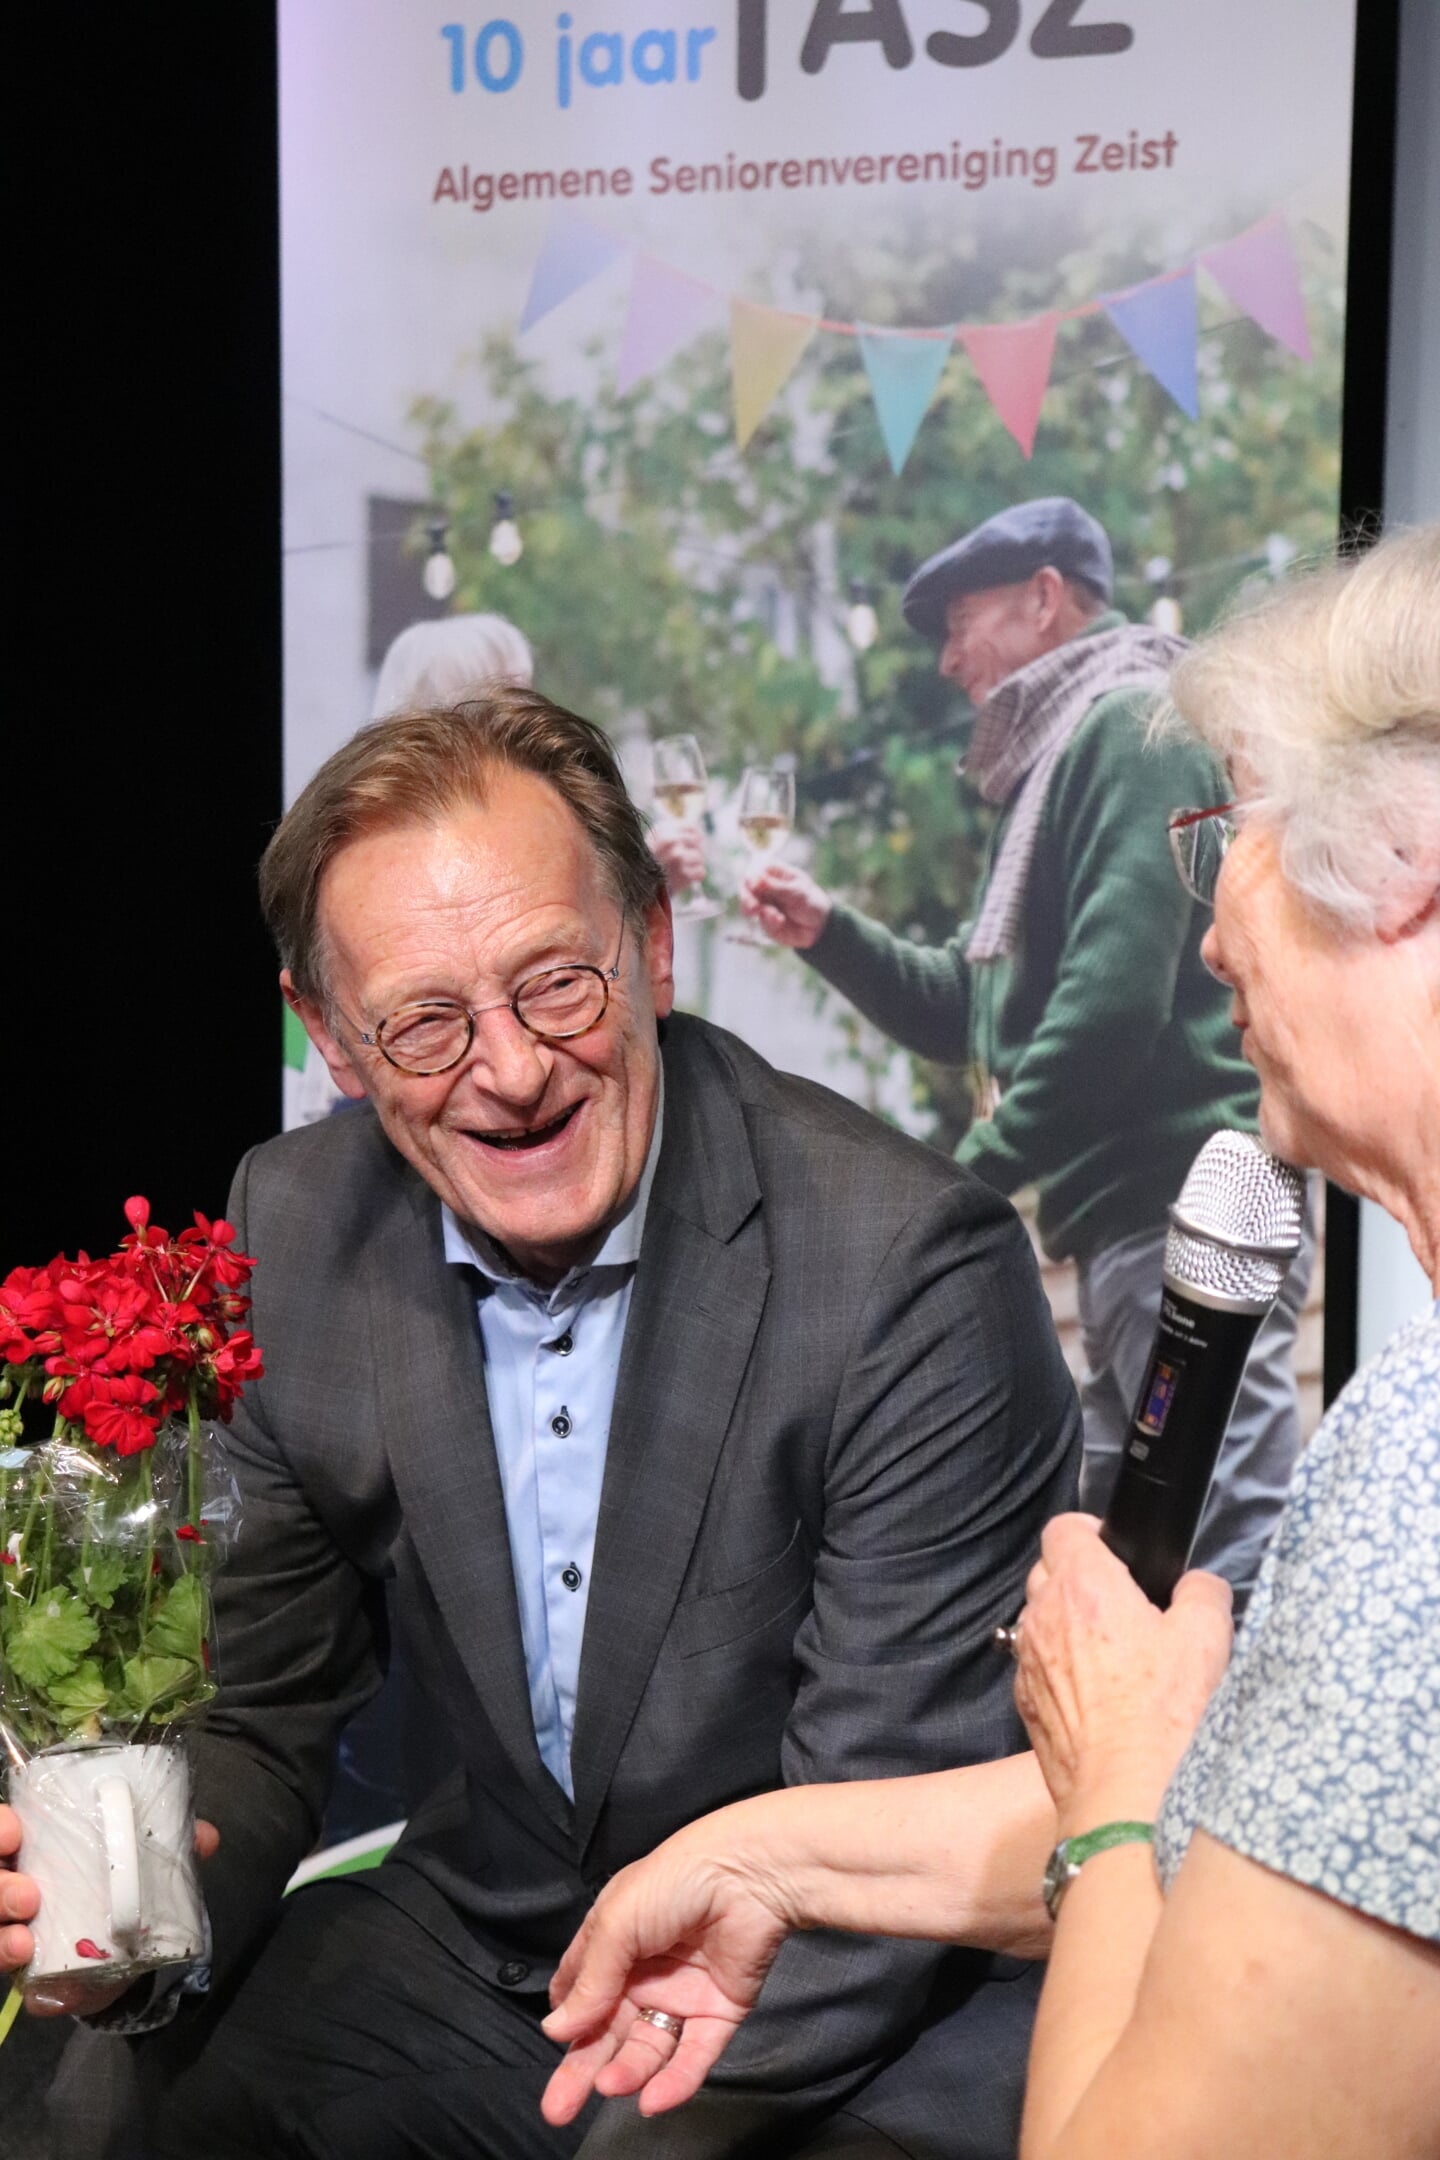 Koos Janssen krijgt een geranium van Lia van Dijk, voorzitter van de ASZ, maar hij mag er niet achter gaan zitten.